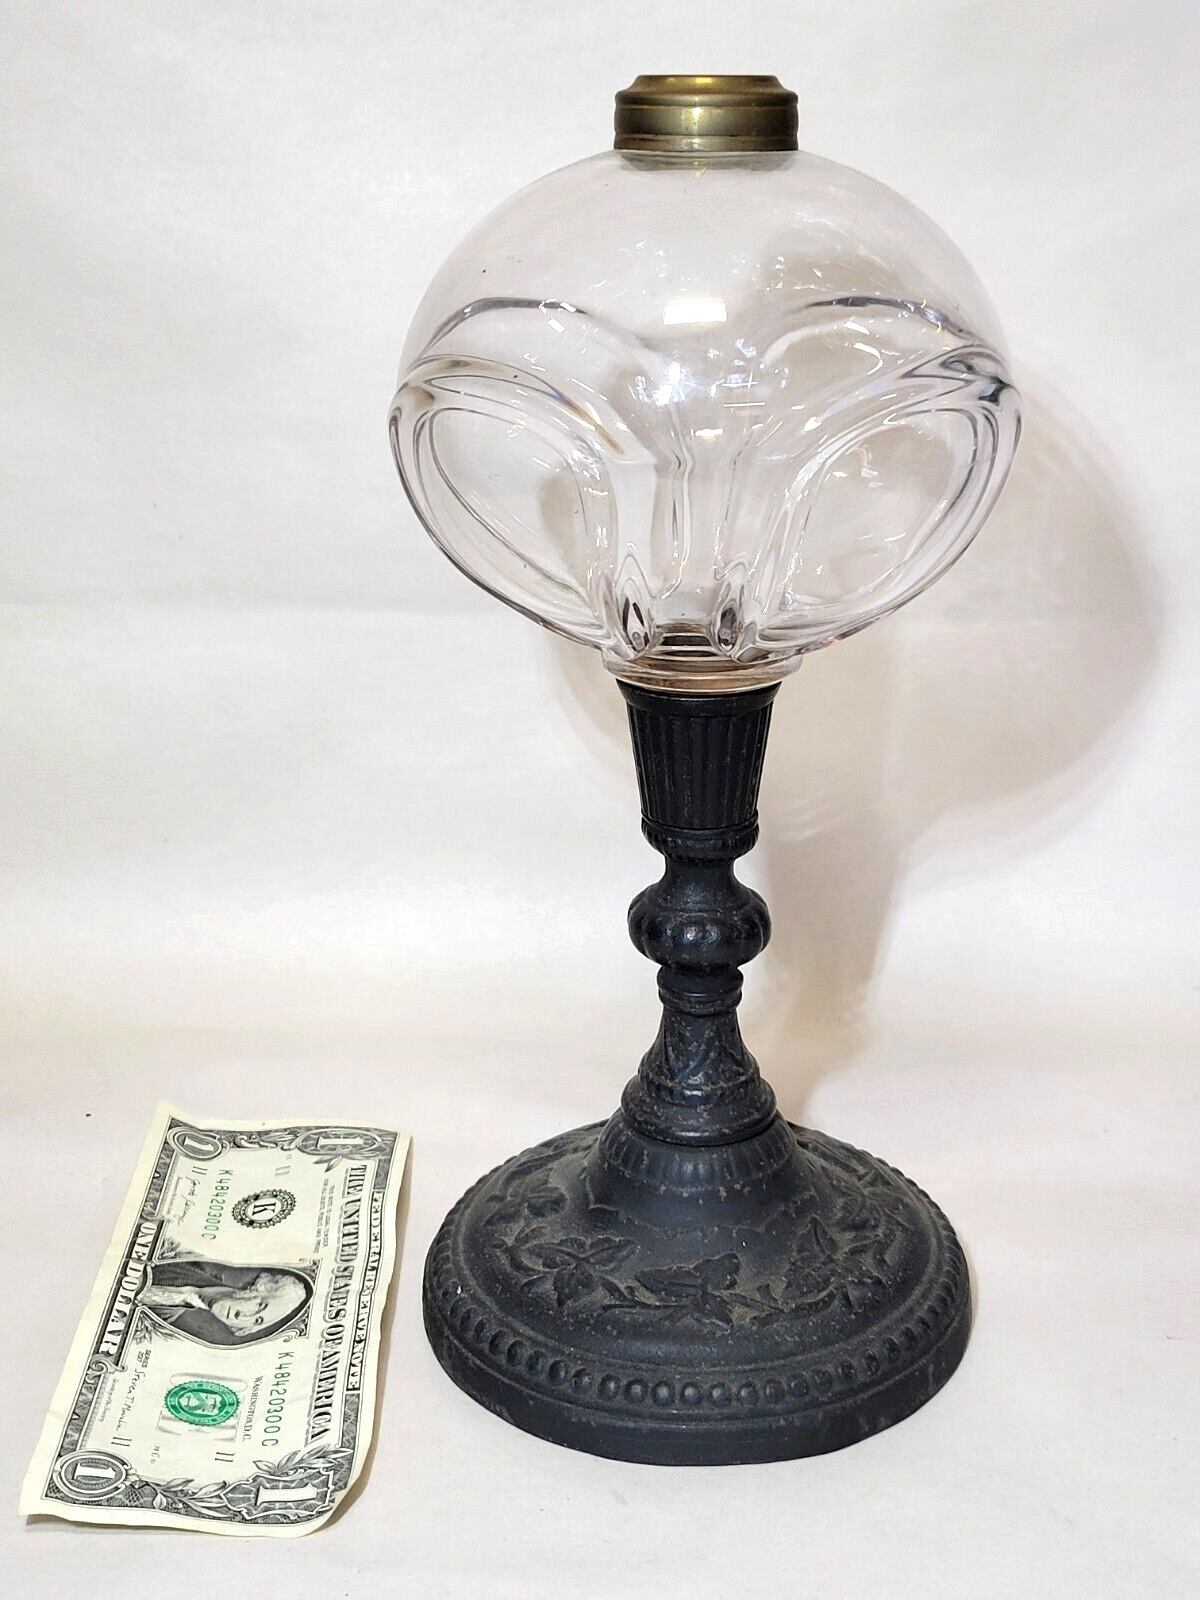 Hobbs QUAD LOOP on Cast Iron Stem Glass OIL LAMP Antique c1870s Victorian